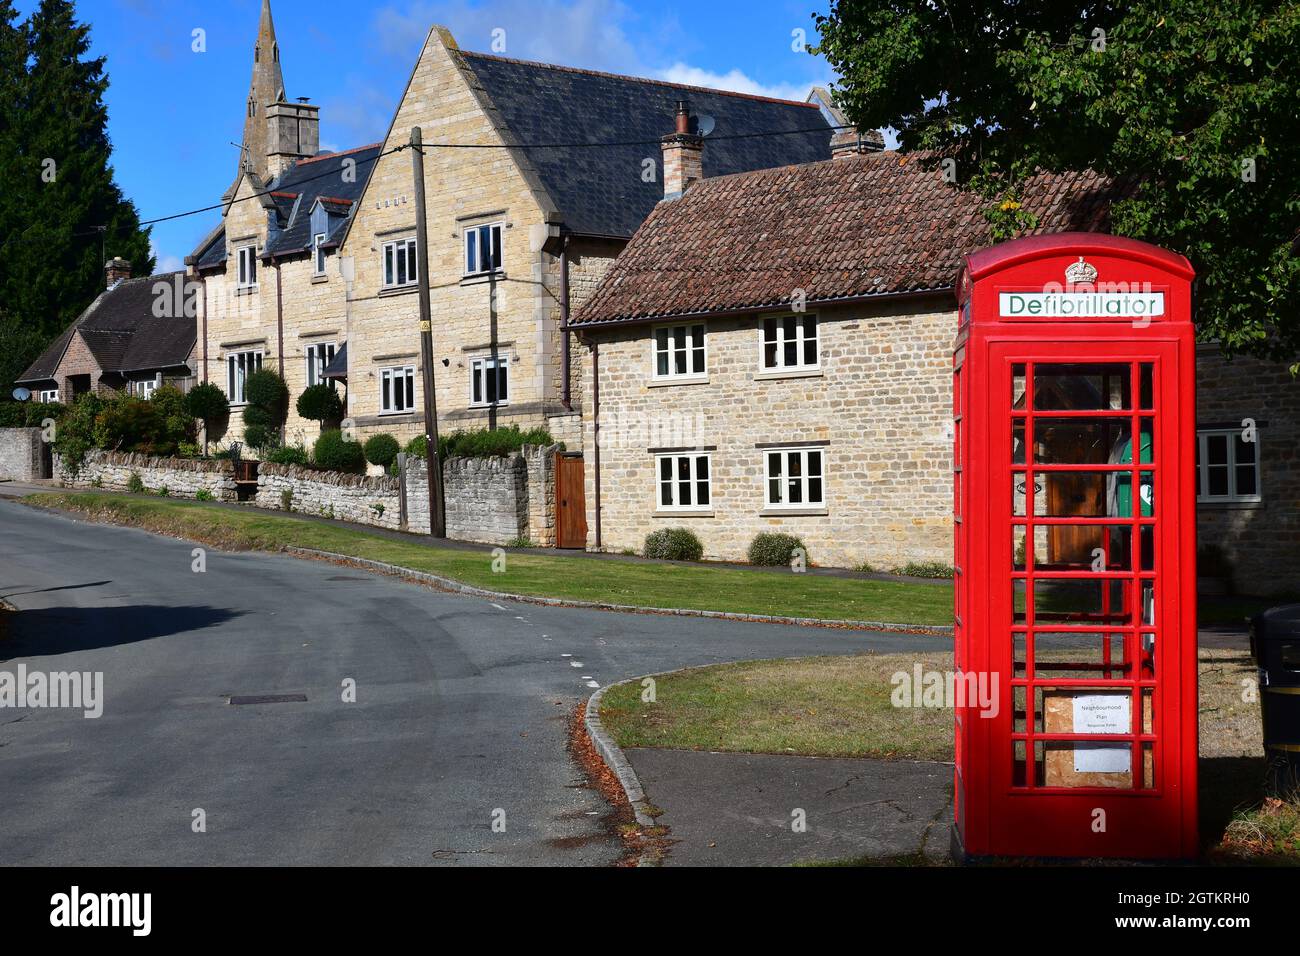 Eine alte rote Telefonbox, die für einen Defibrillator umfunktioniert wurde, neben dem Village Green in Barnwell, Northamptonshire, Großbritannien Stockfoto